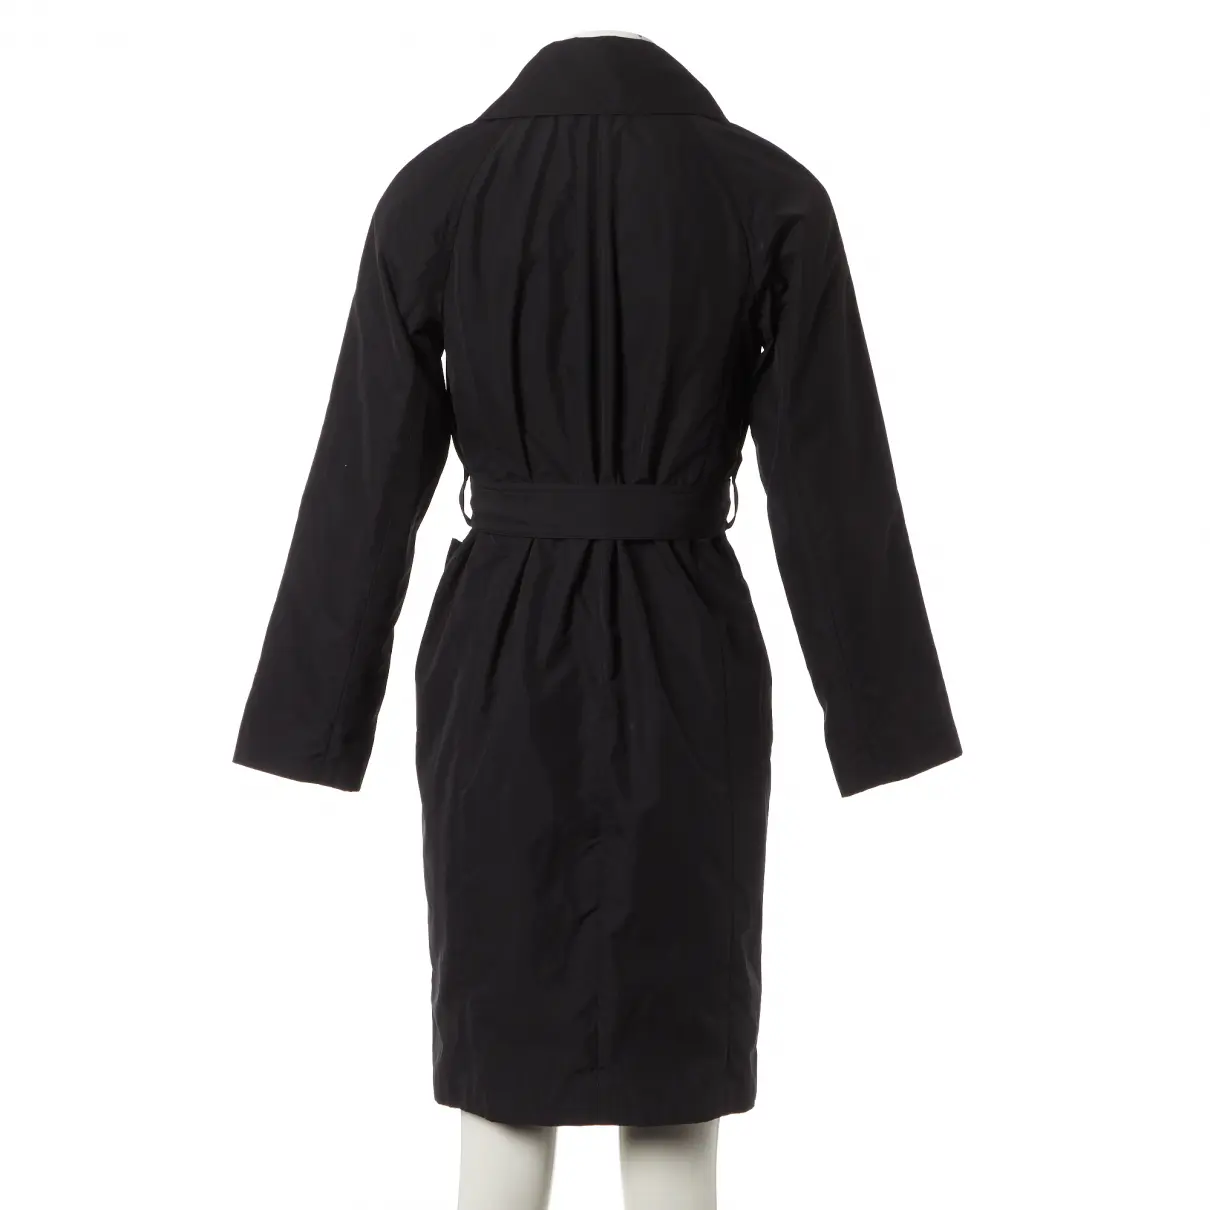 Buy Yves Saint Laurent Trench coat online